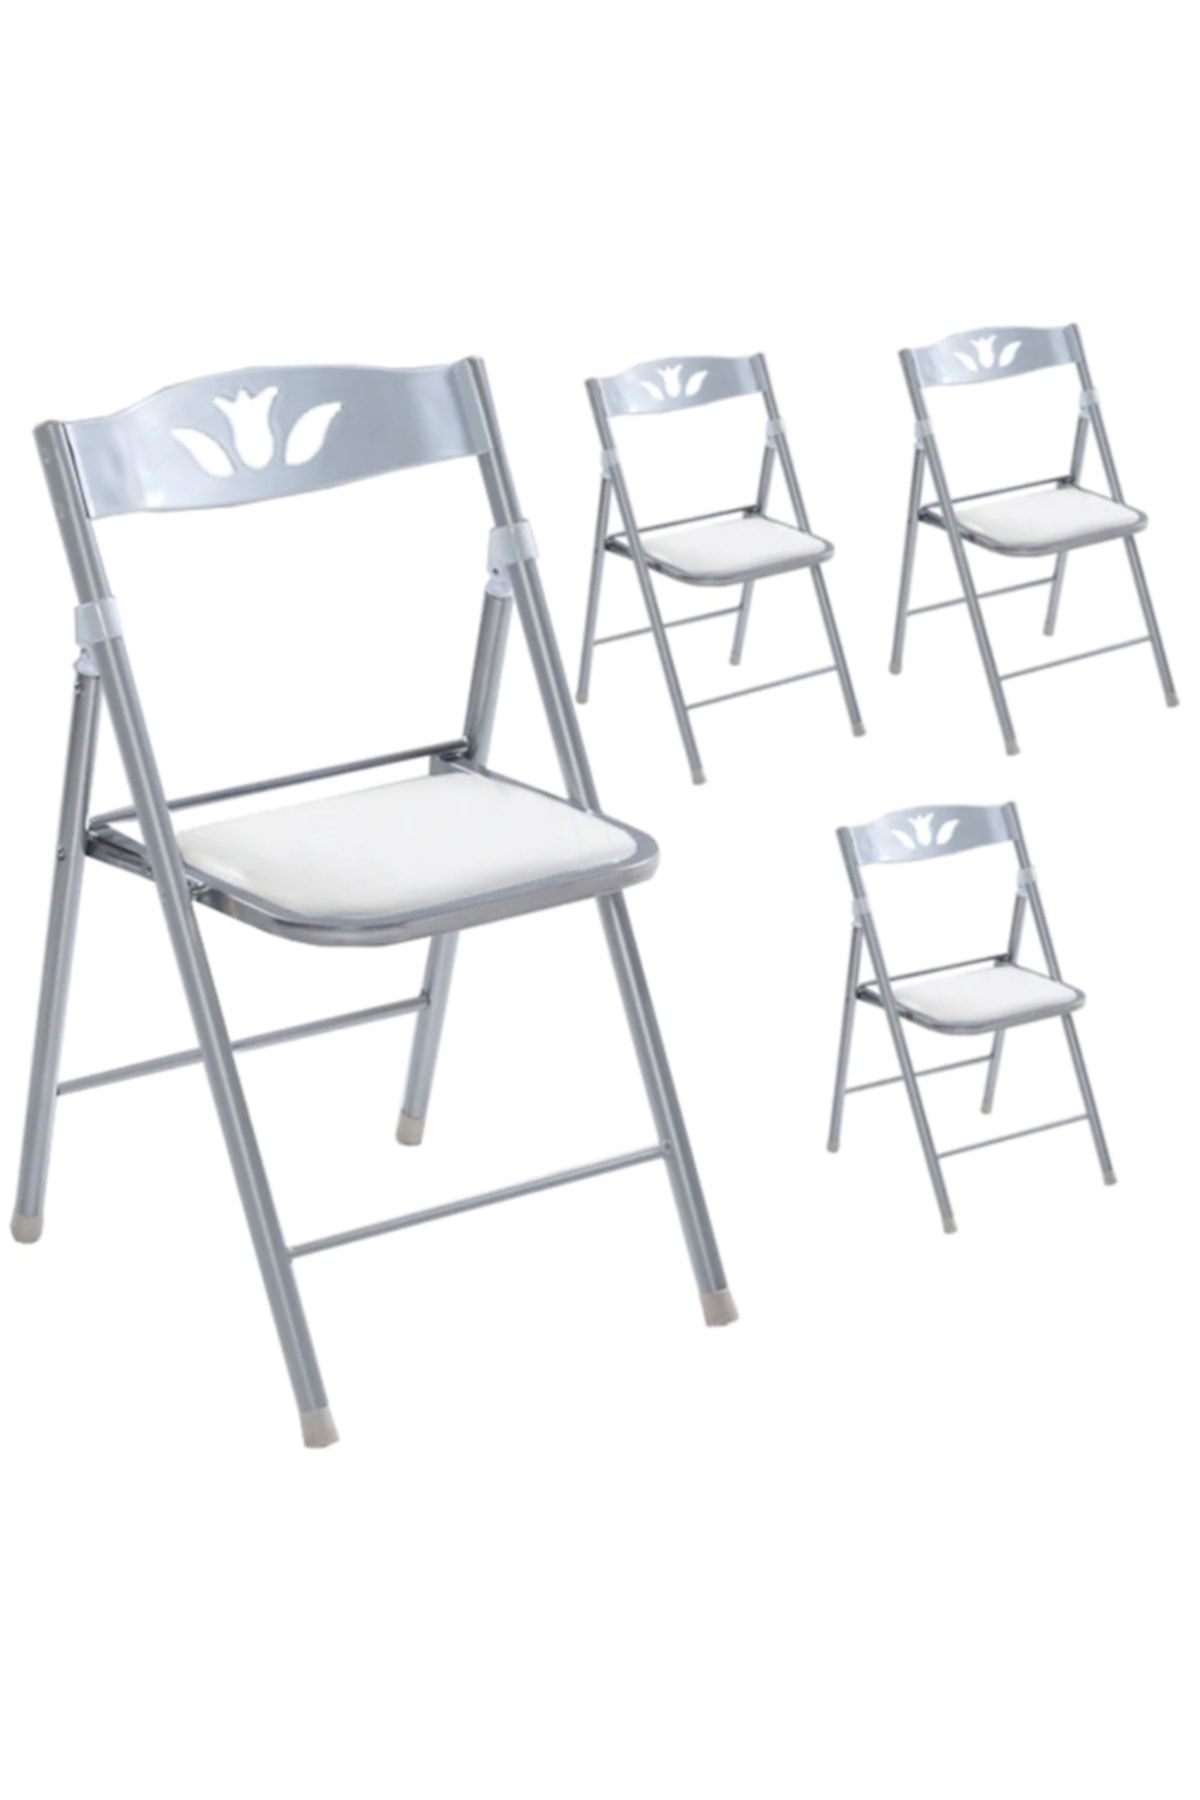 Weblonya Katlanır Mutfak Sandalyesi 4 lü Katlanabilir Sandalye